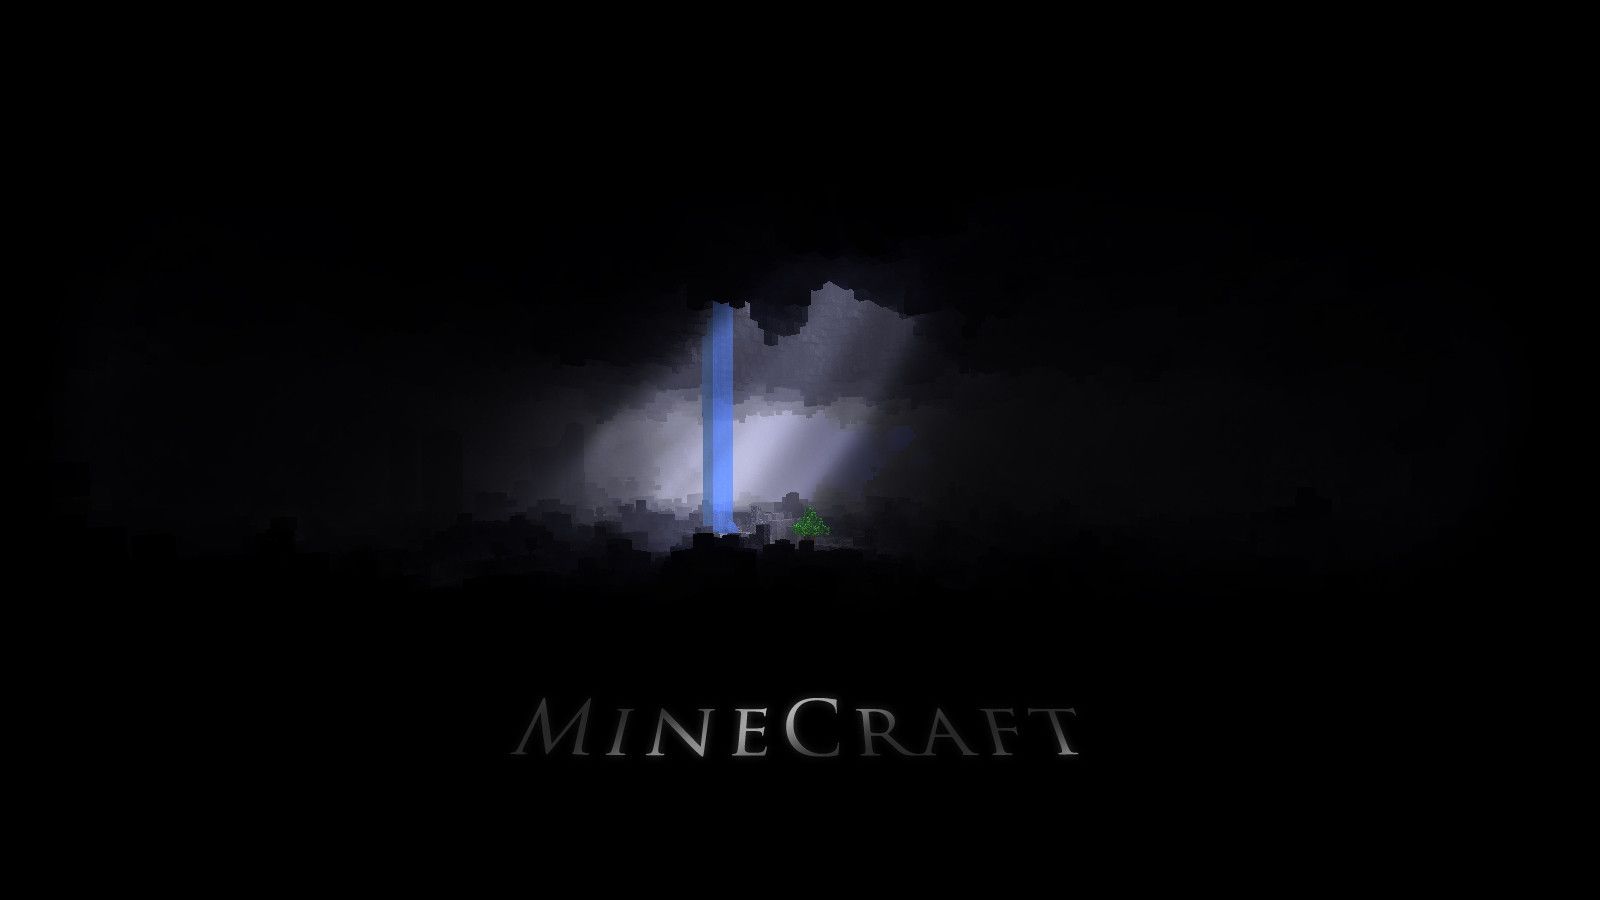 Minecraft HD Wallpaper | 1920x1080 | ID:25329